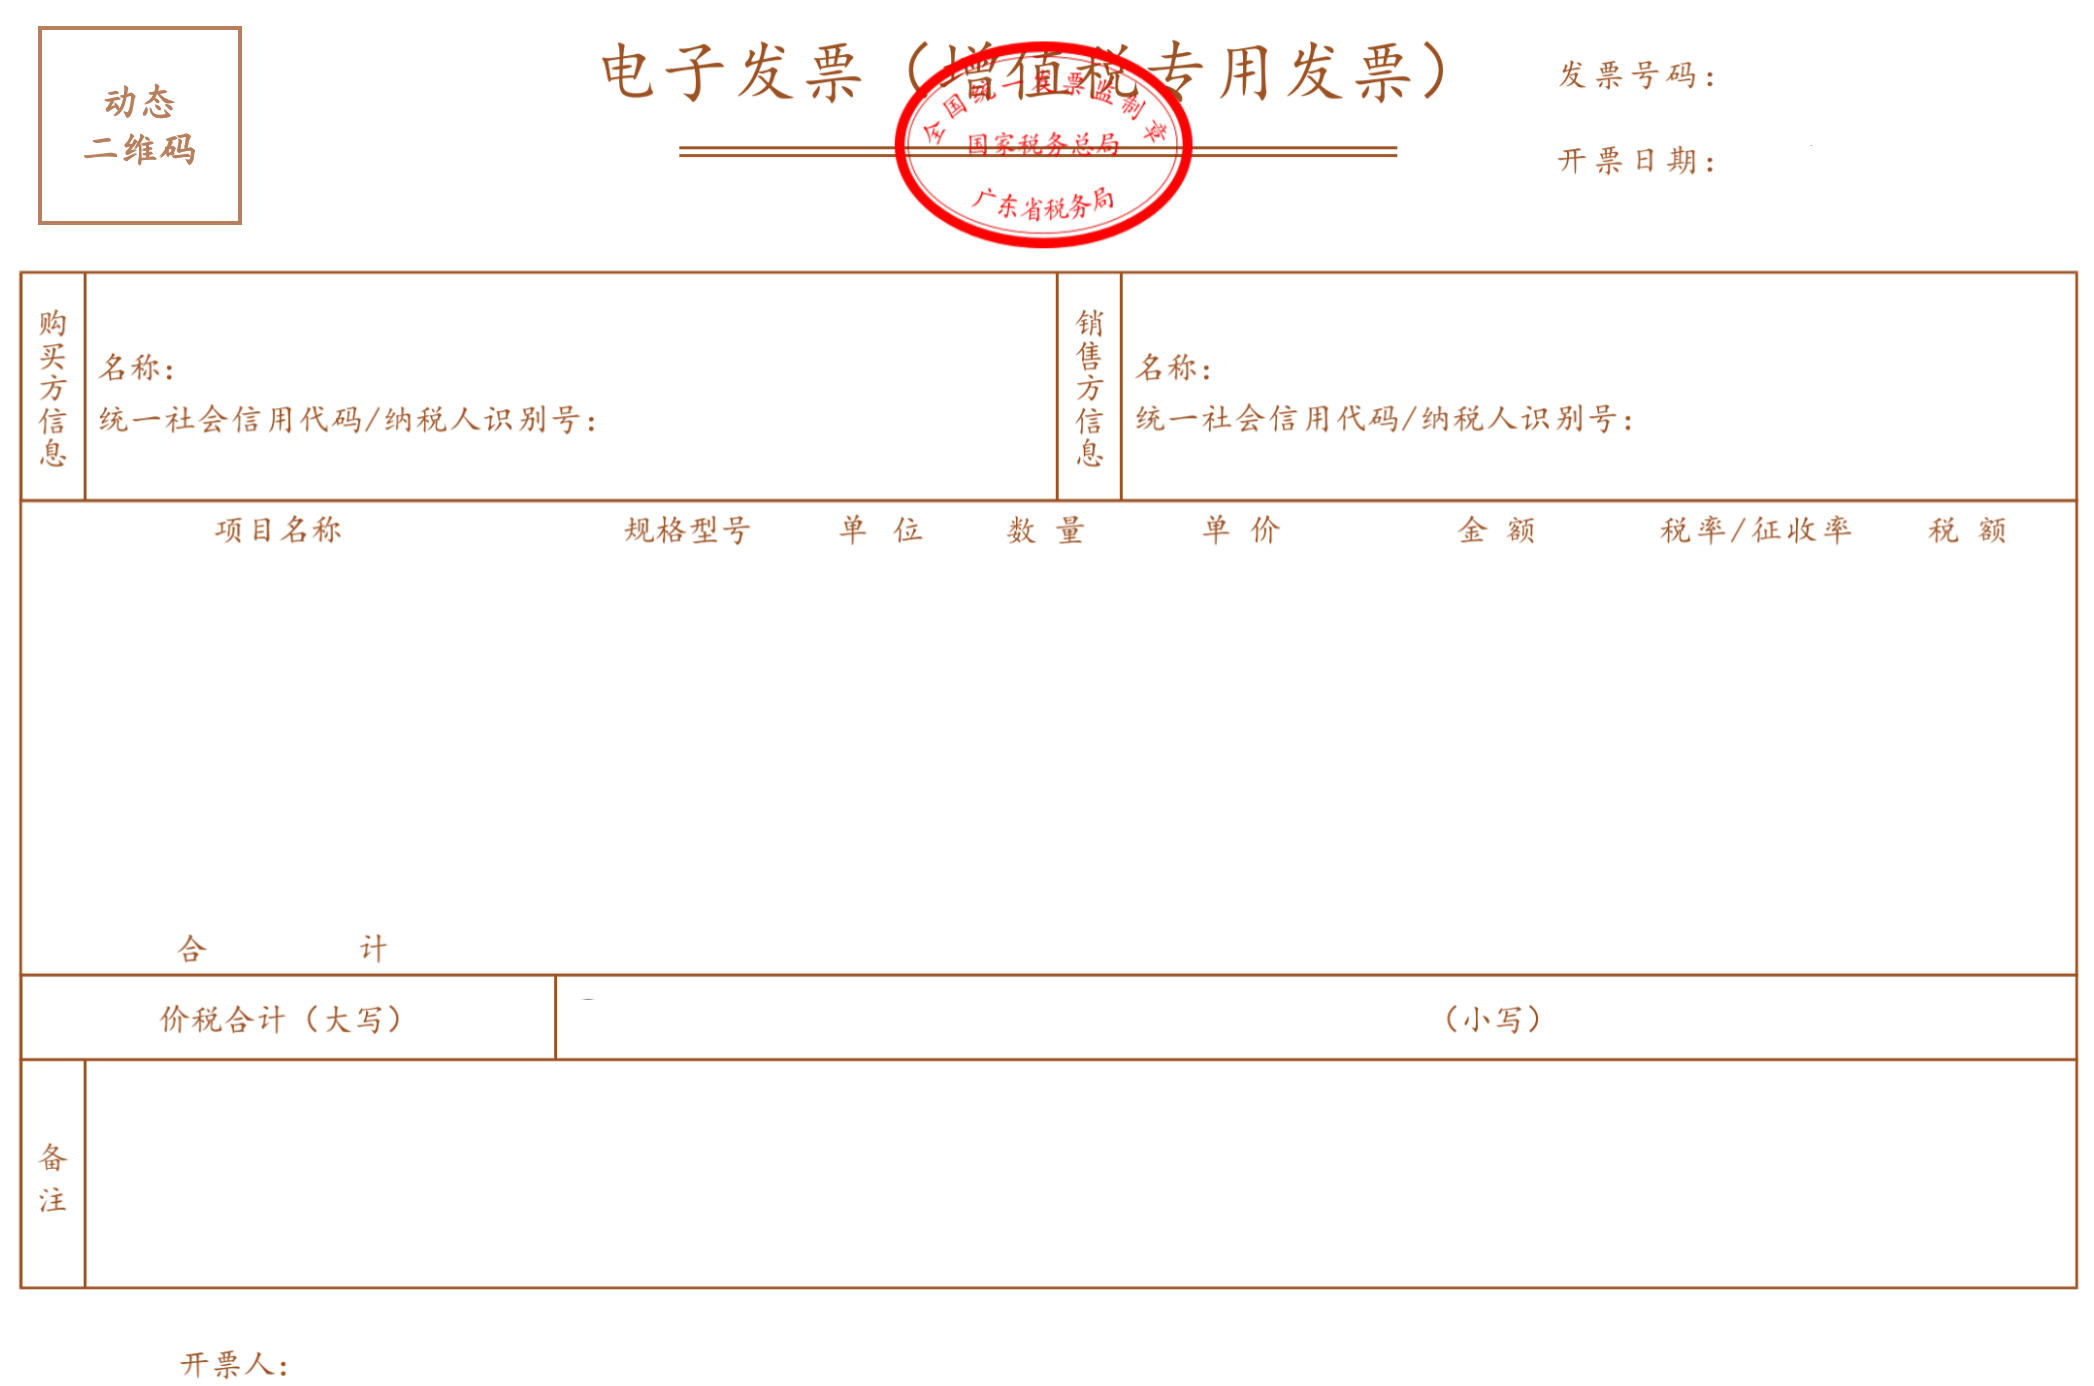 国家税务总局广东省税务局公告2021年第3号 